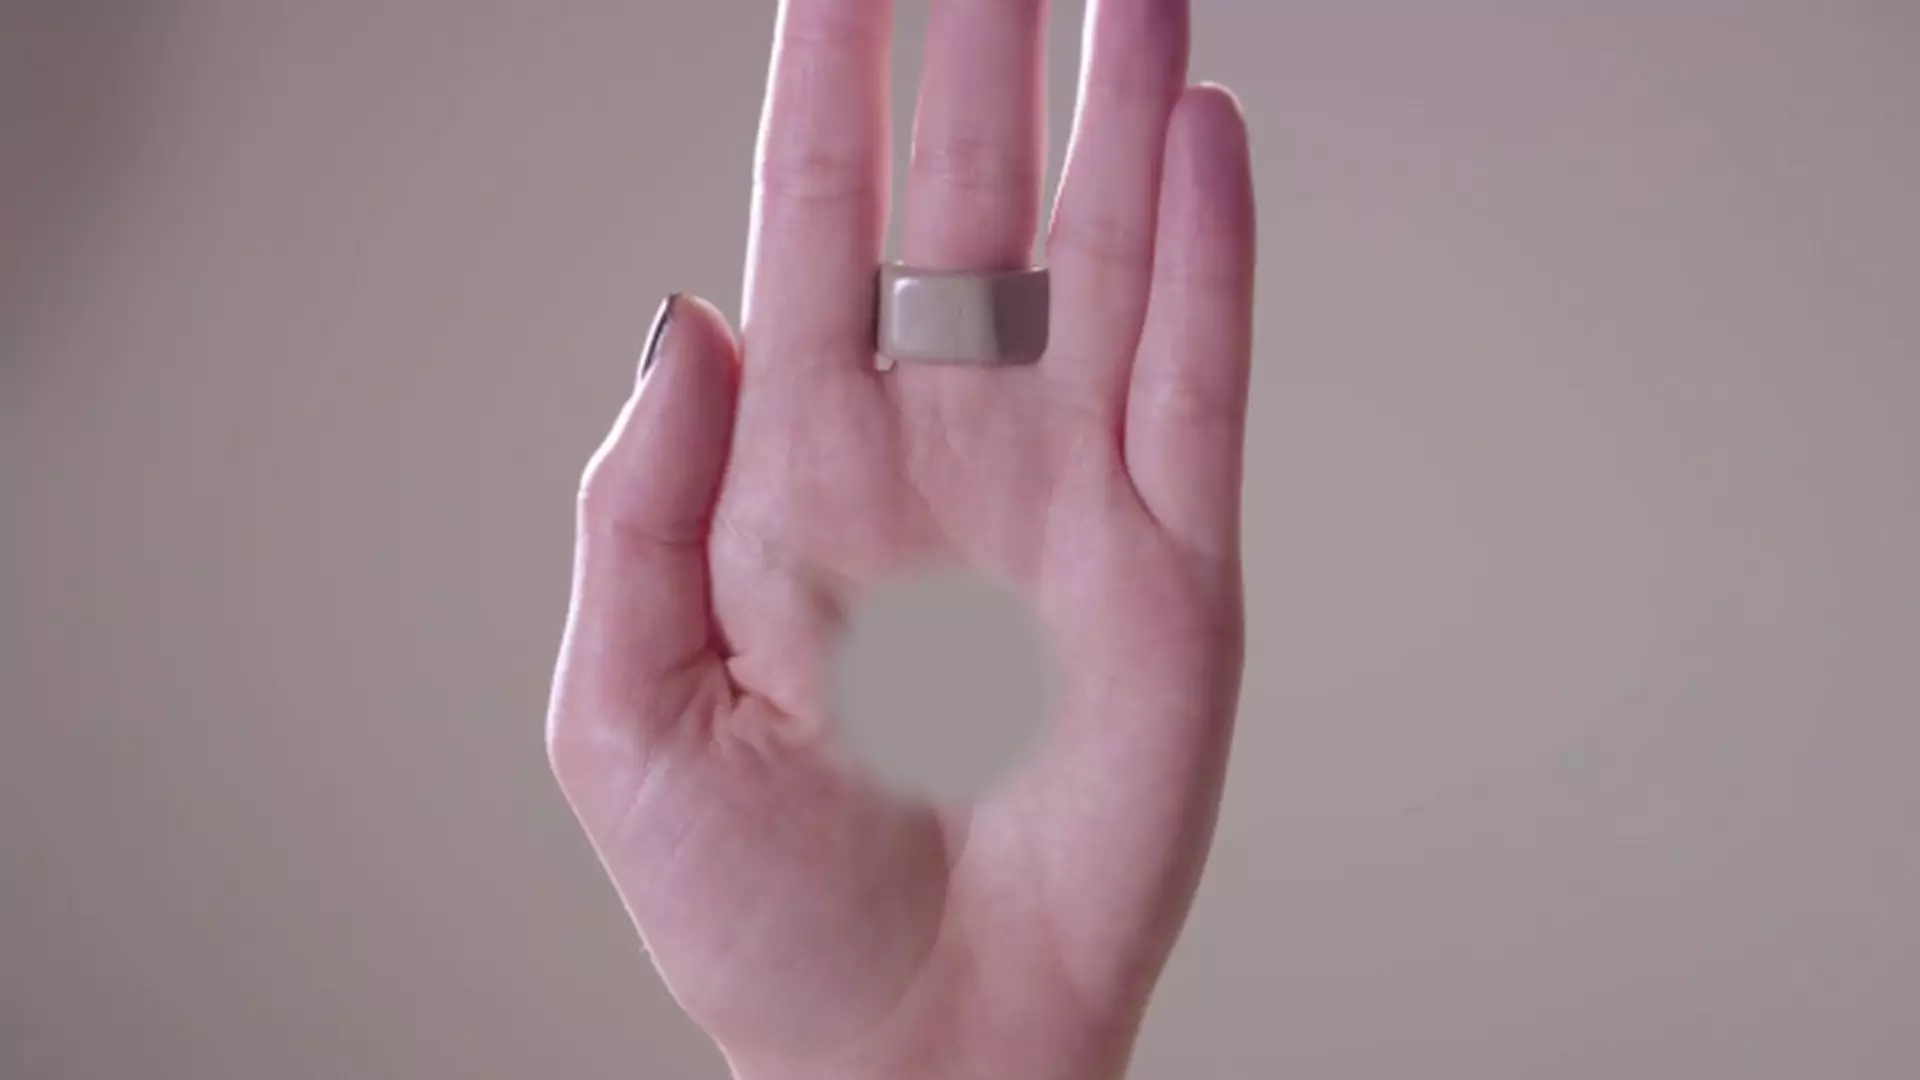 Dzięki tej szalonej iluzji optycznej zobaczysz dziurę w swojej dłoni